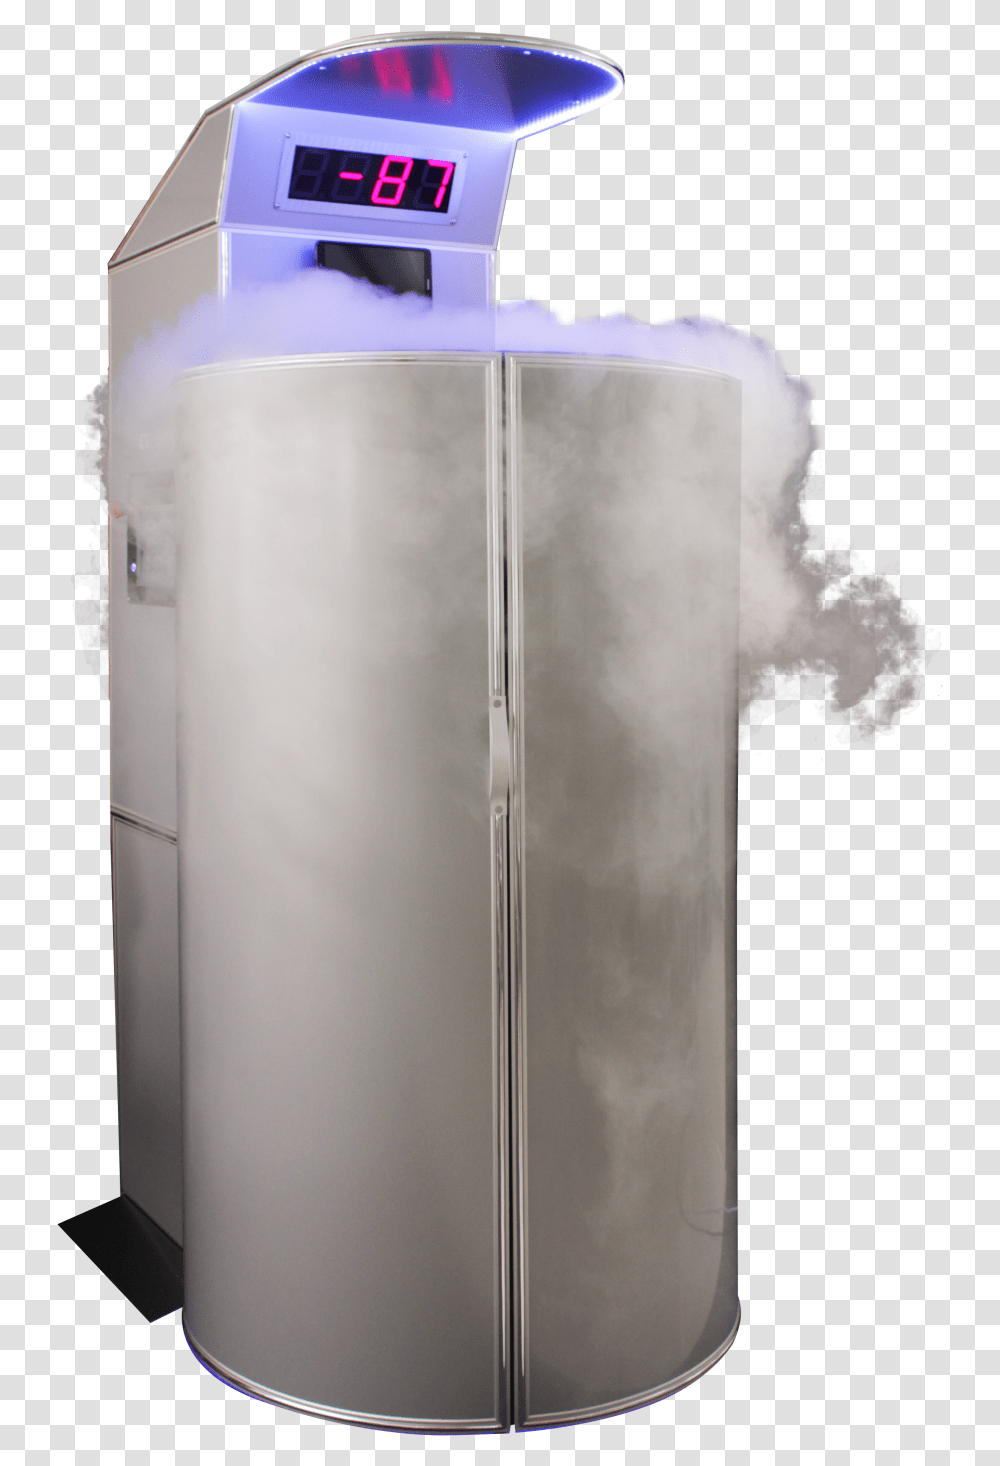 Refrigerator, Appliance, Smoke, Home Decor Transparent Png